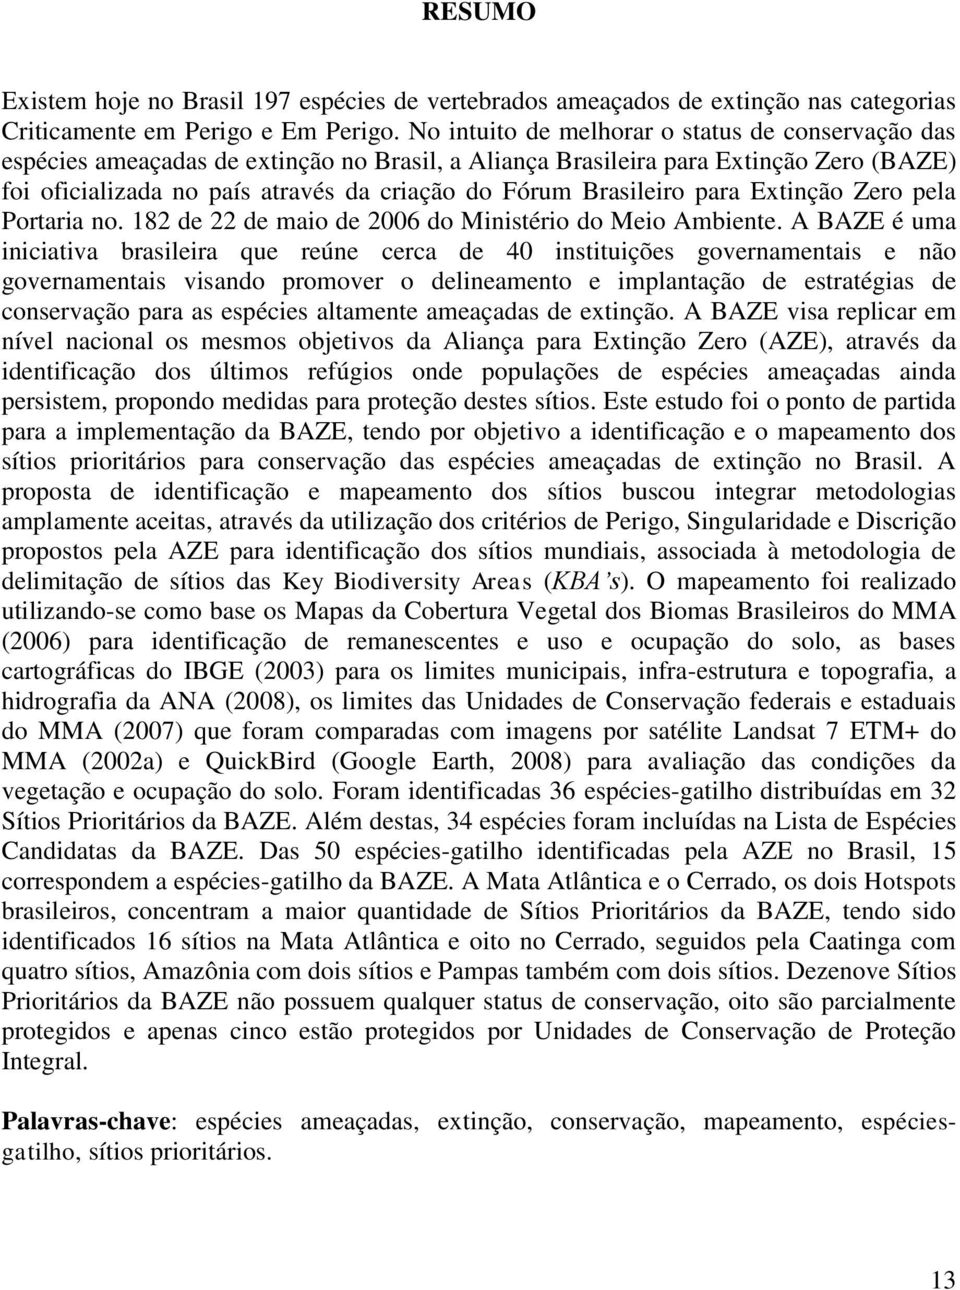 Brasileiro para Extinção Zero pela Portaria no. 182 de 22 de maio de 2006 do Ministério do Meio Ambiente.